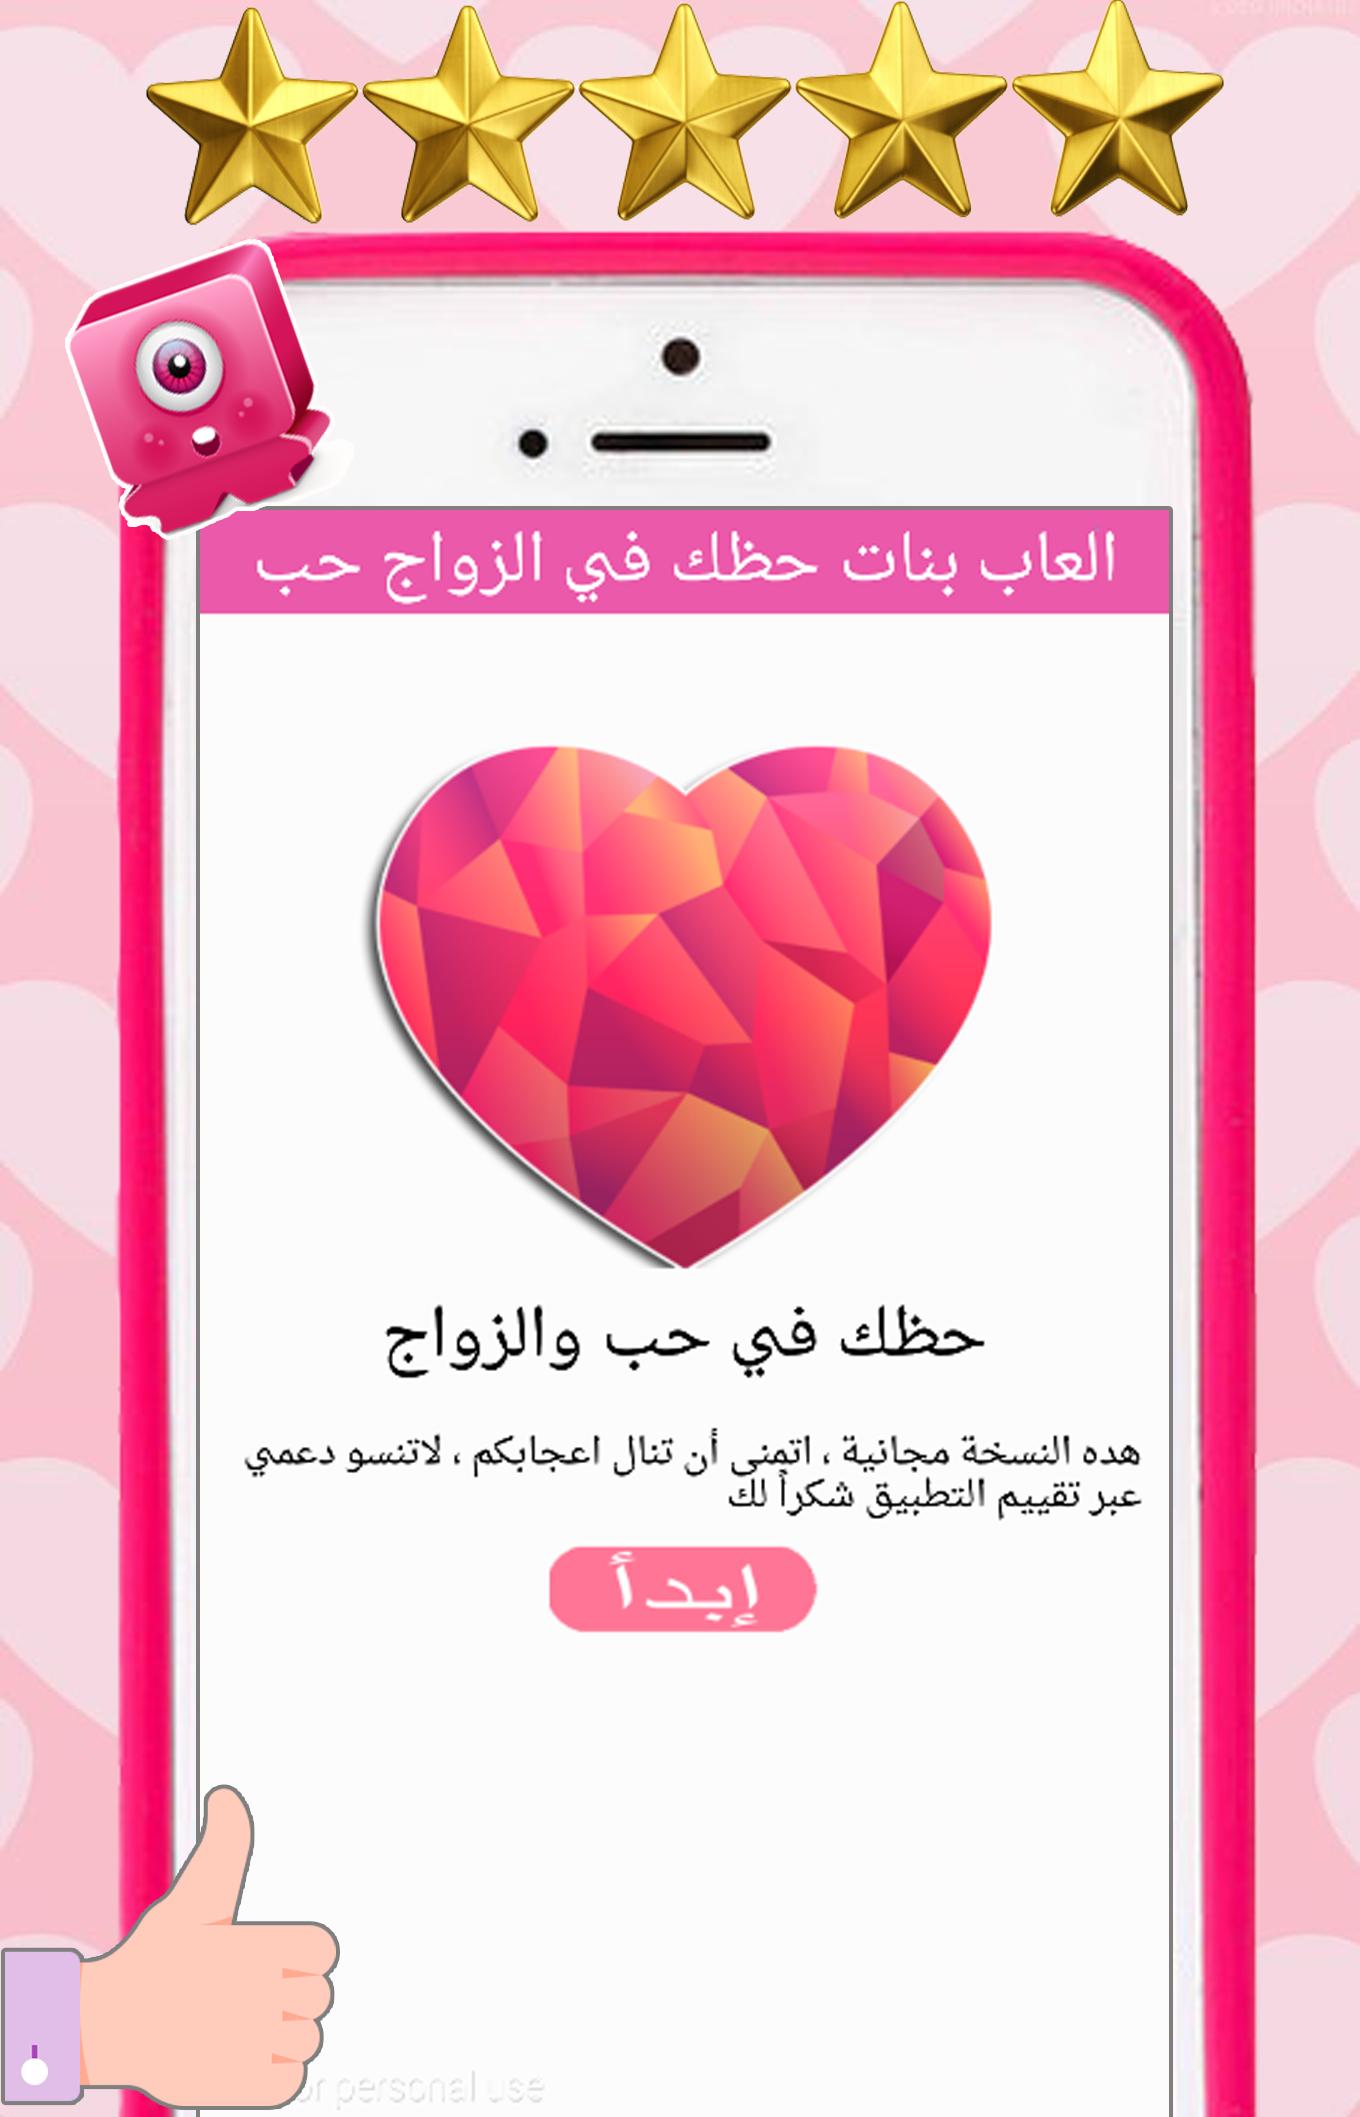 لعبة اختبار حظك في الزواج و الحب for Android - APK Download